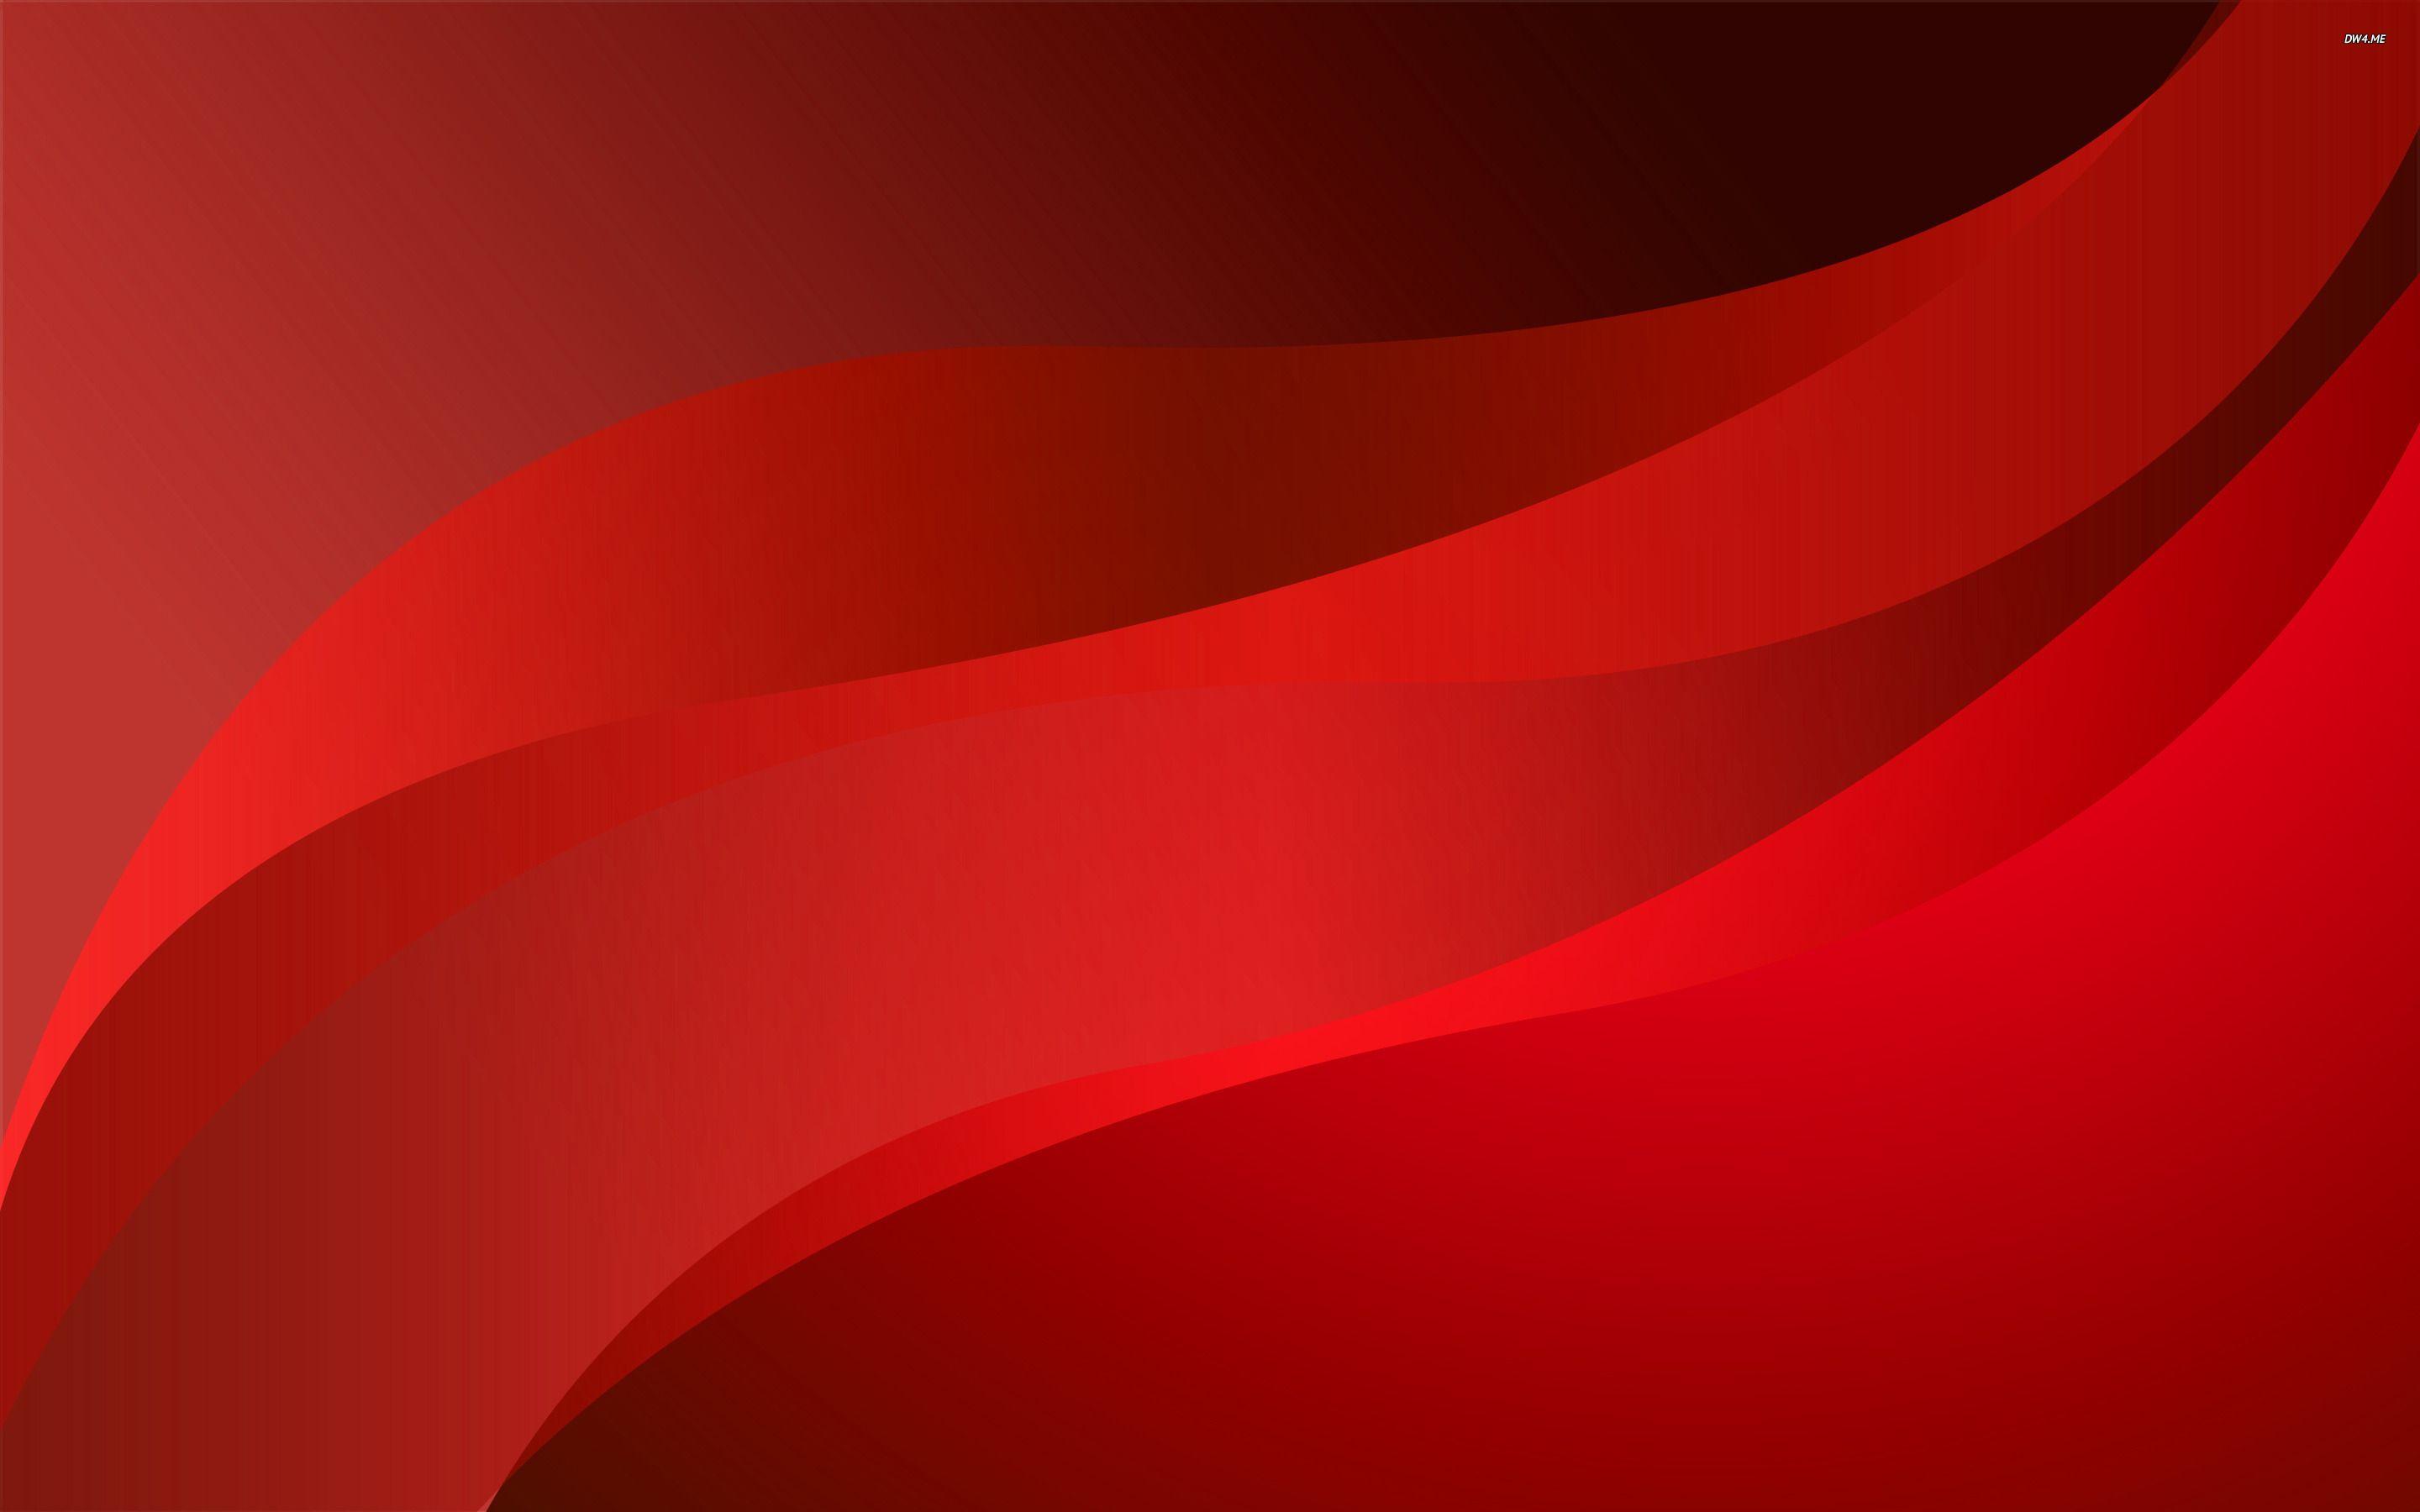 Tải ngay Red abstract background 4k đẹp nhất, miễn phí